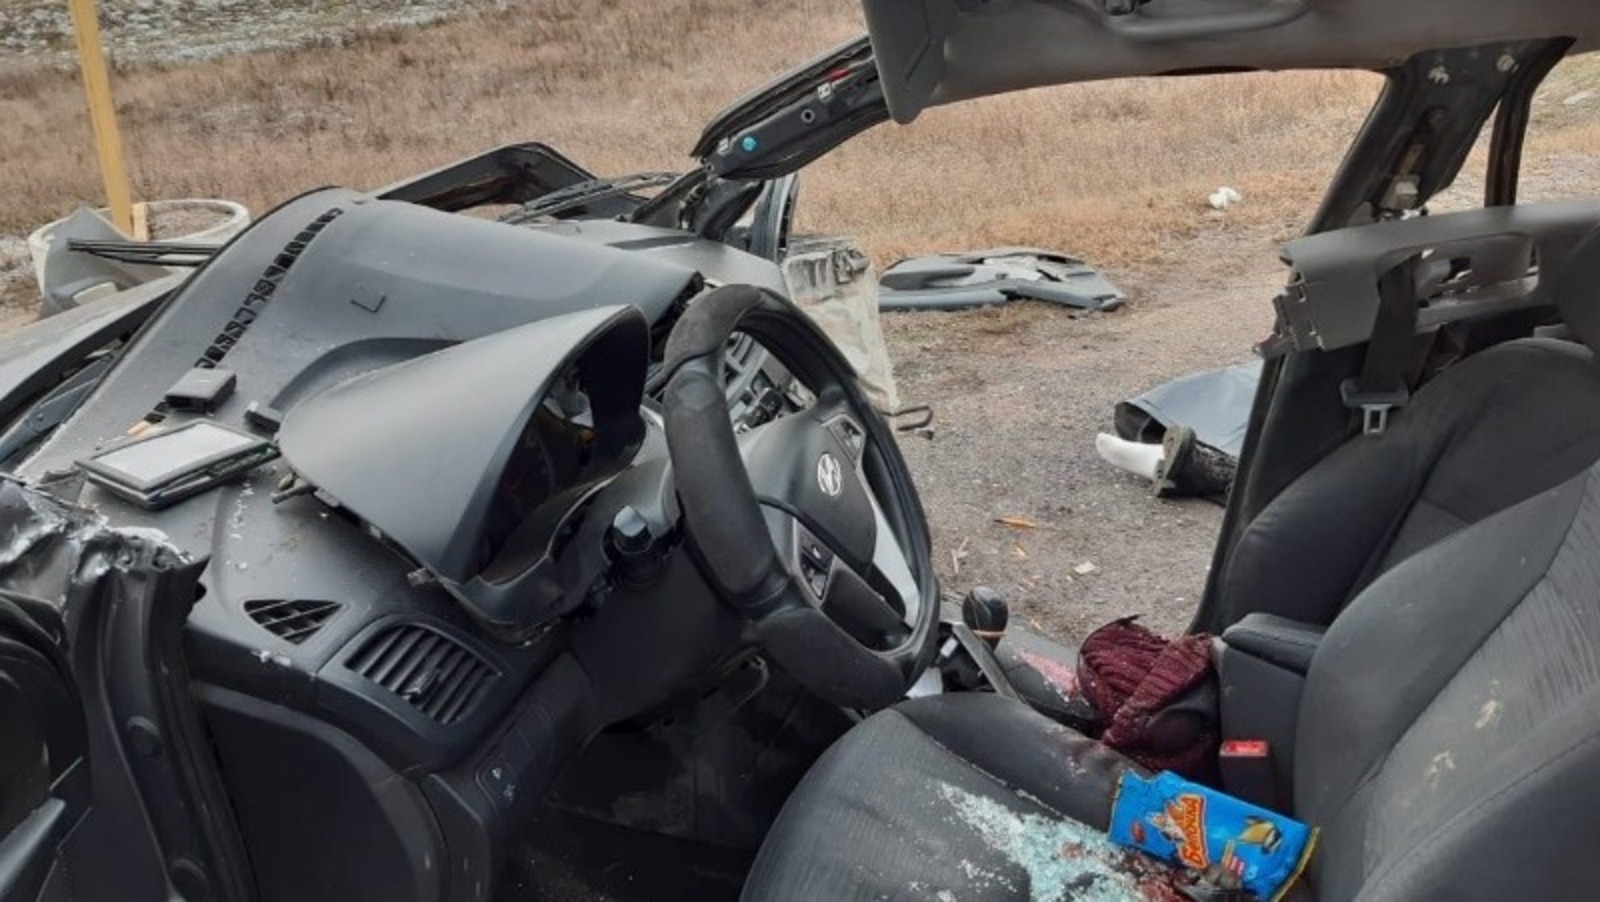 Подробности смертельного ДТП в Башкирии: женщина-водитель в коме, ее 18-летняя дочь погибла